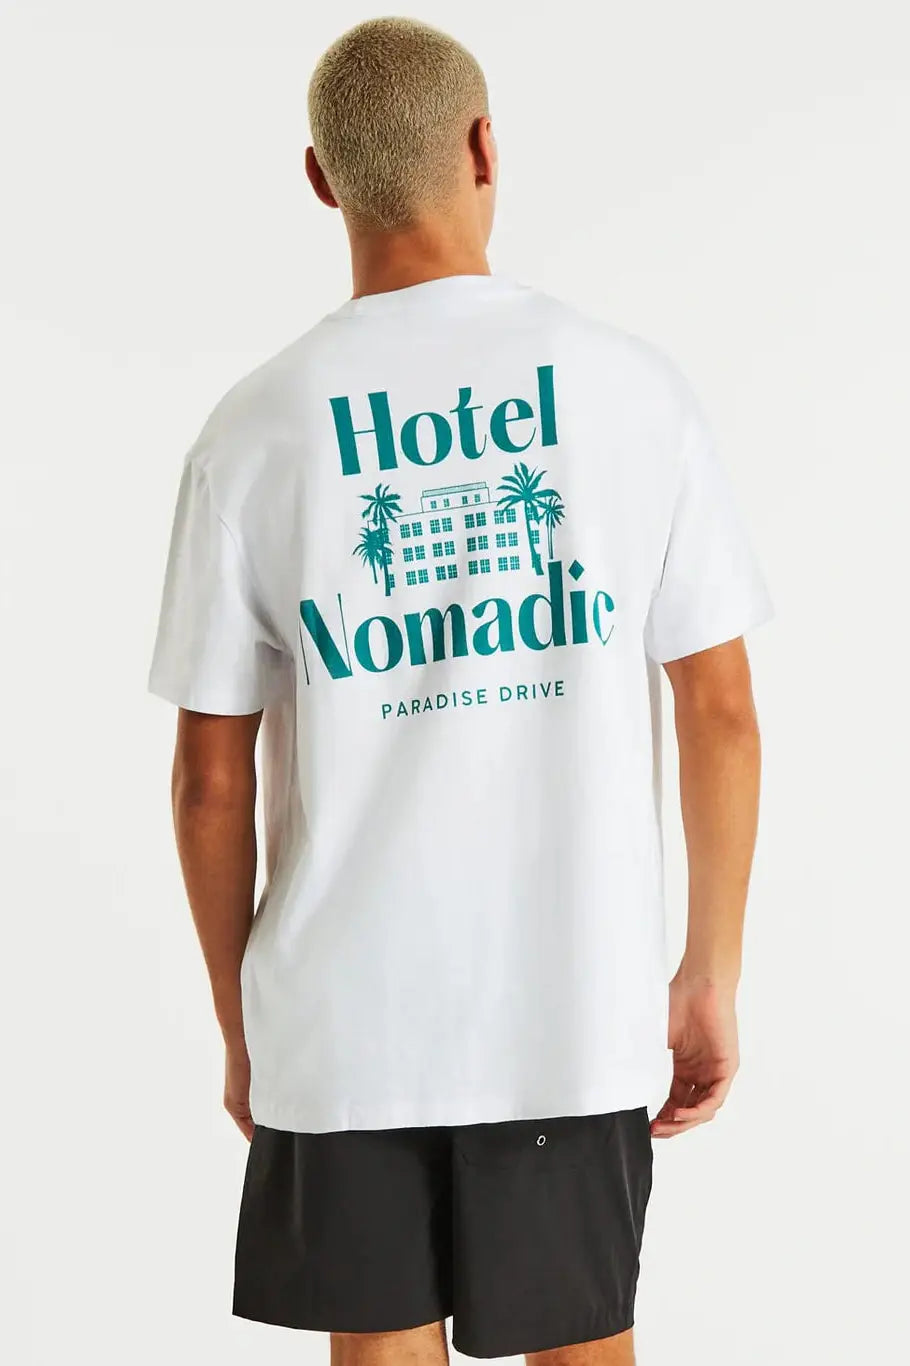 Nomadic paradise - hotel nomadic relaxed tee